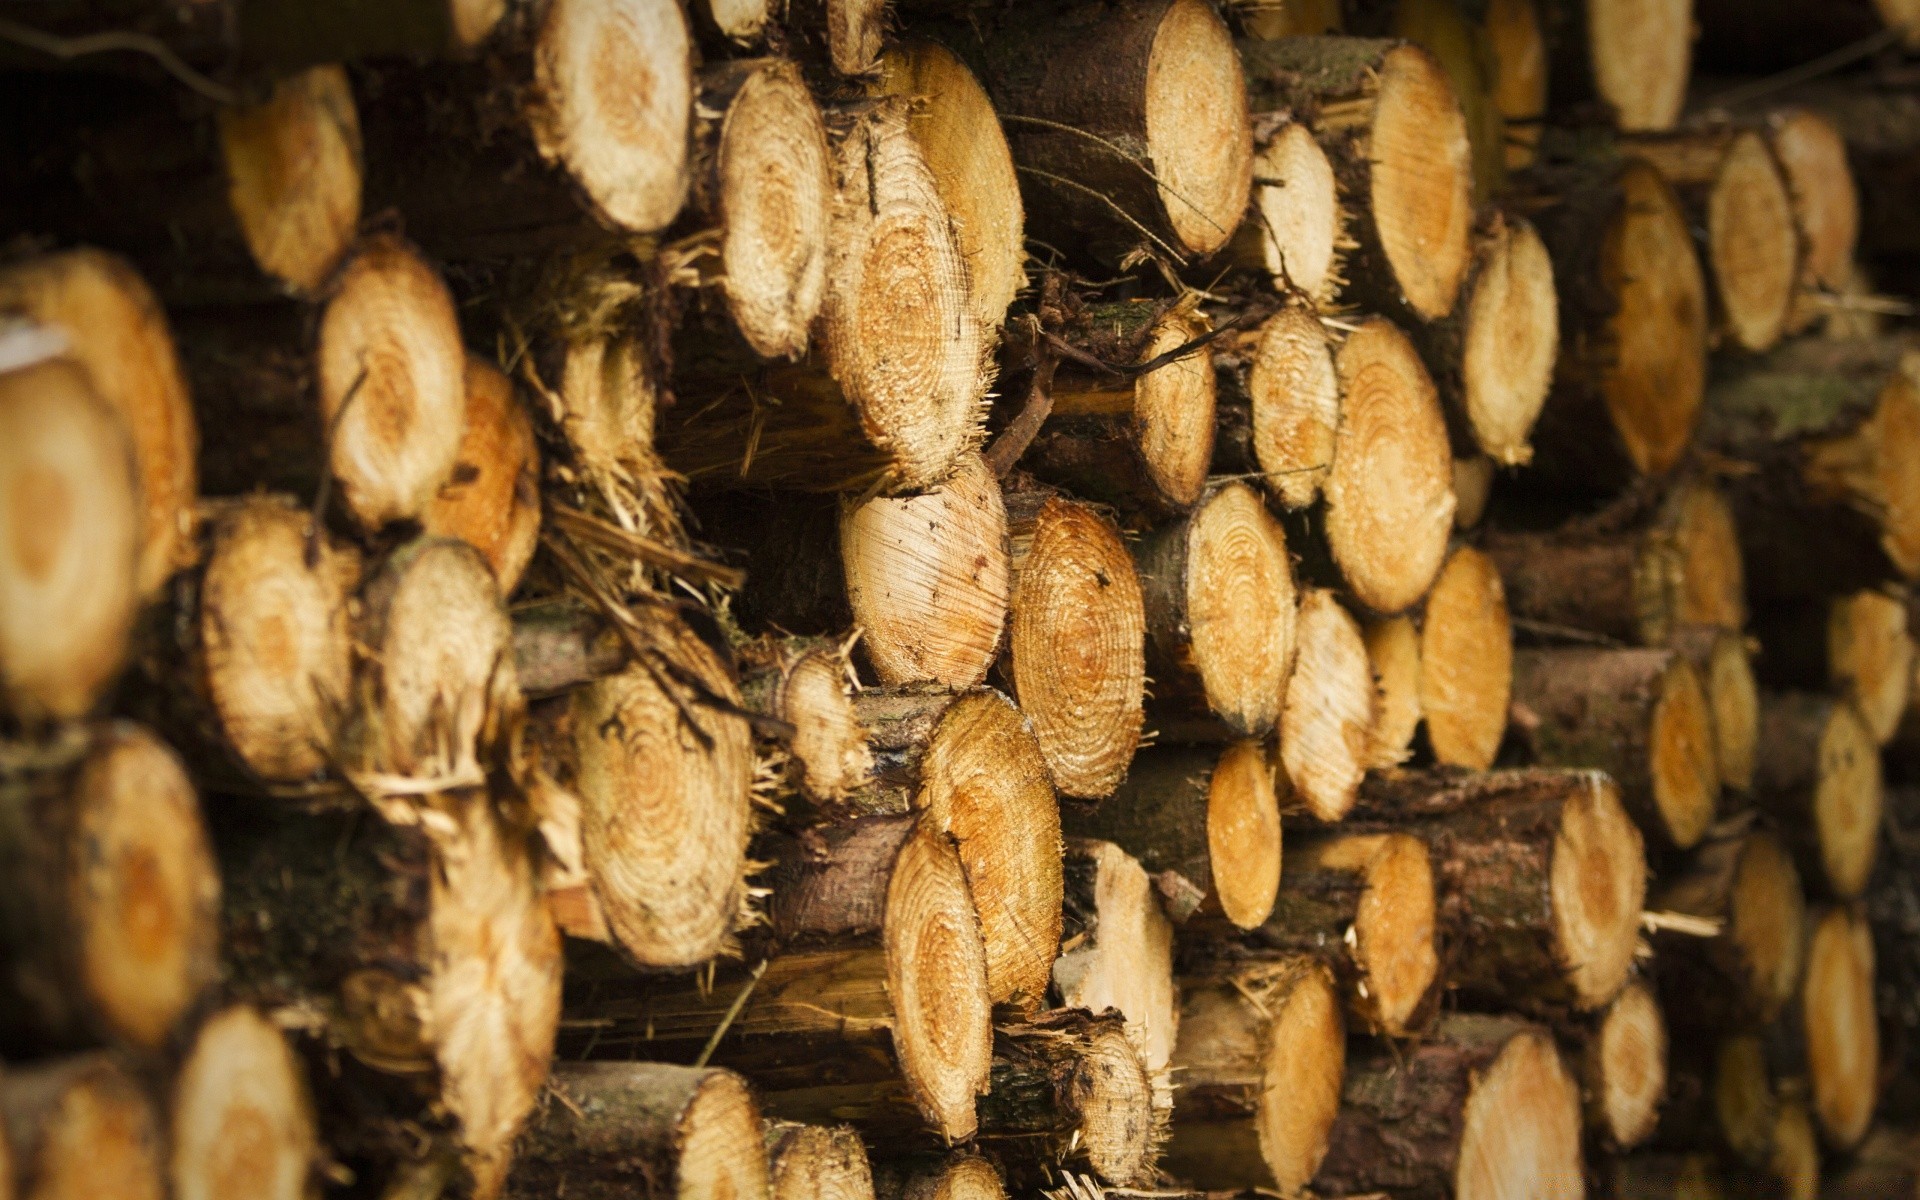 осень природа еда рабочего стола крупным планом партия сельское хозяйство текстура древесины промышленность рынок шаблон здоровый шпунт изобилие